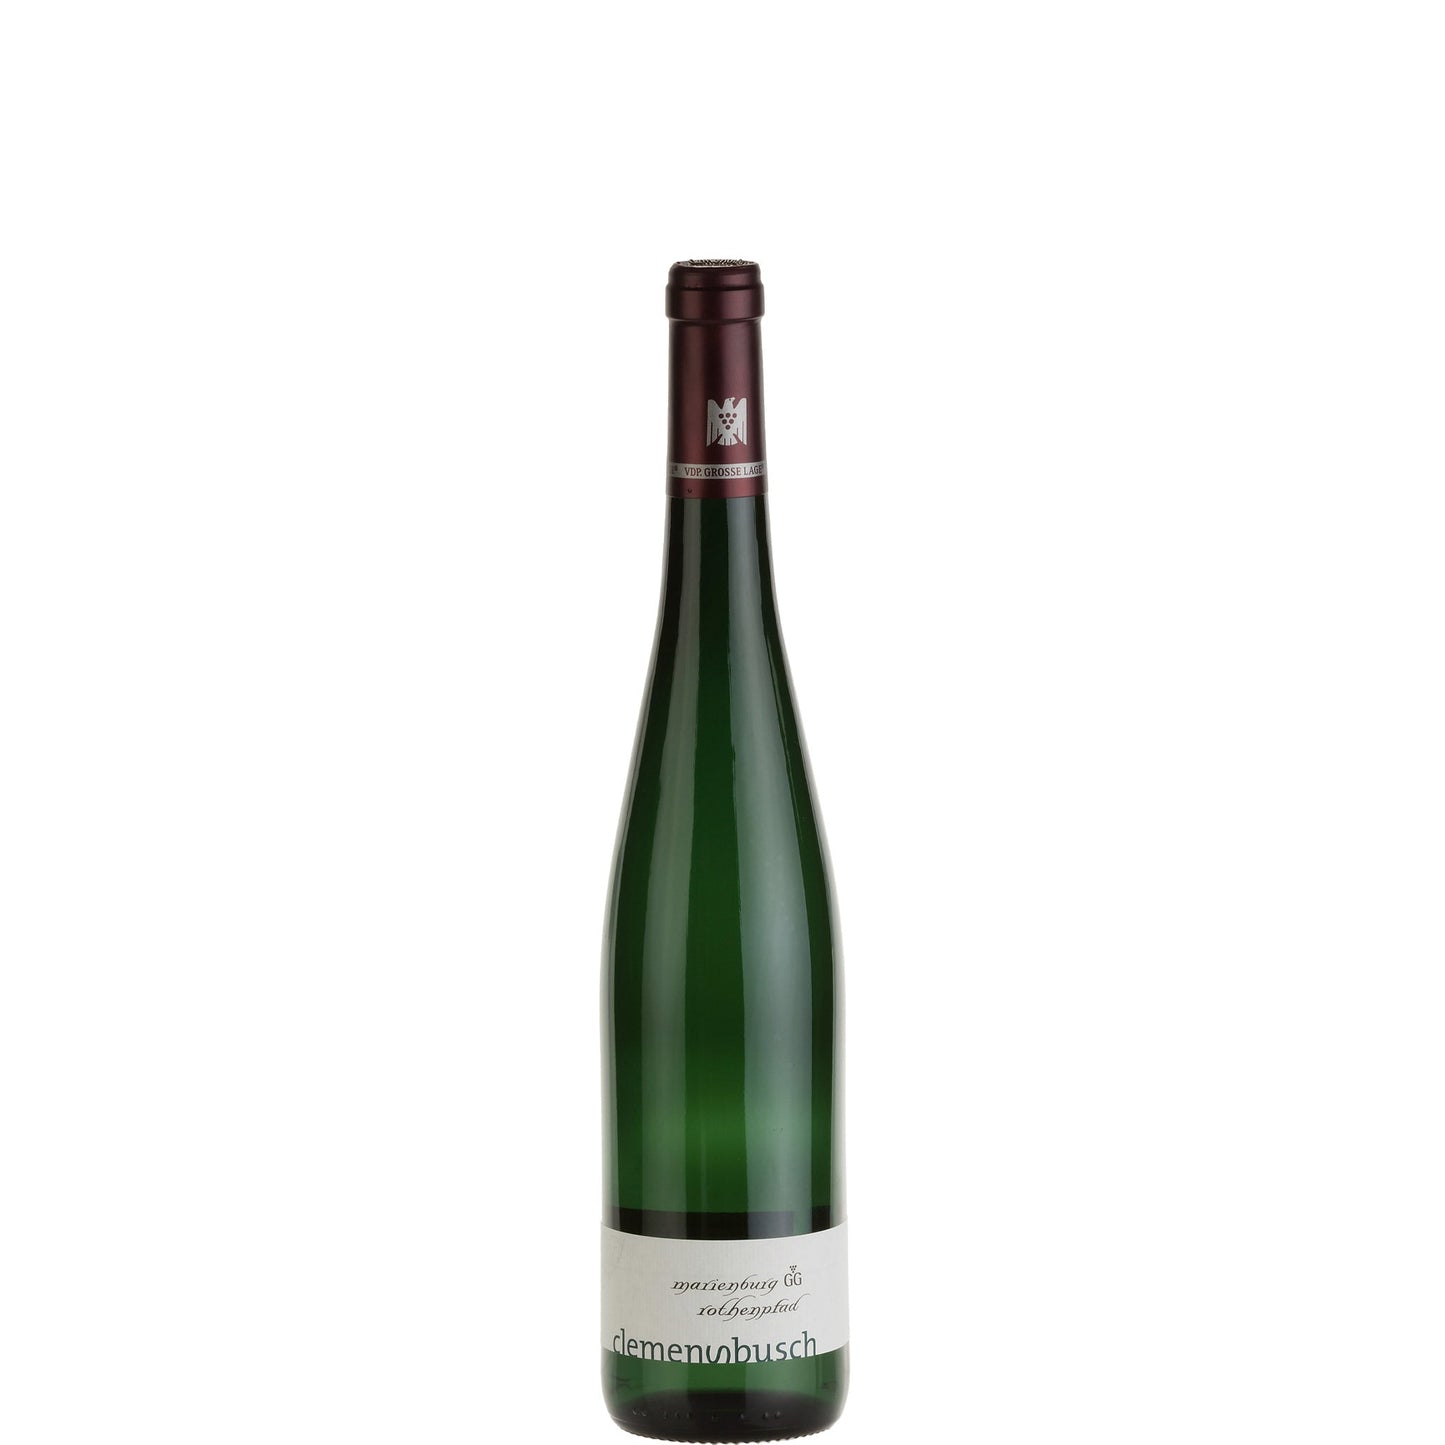 Clemens Busch, Marienburg Rothenpfad Riesling GG, 2019 - Half-bottle